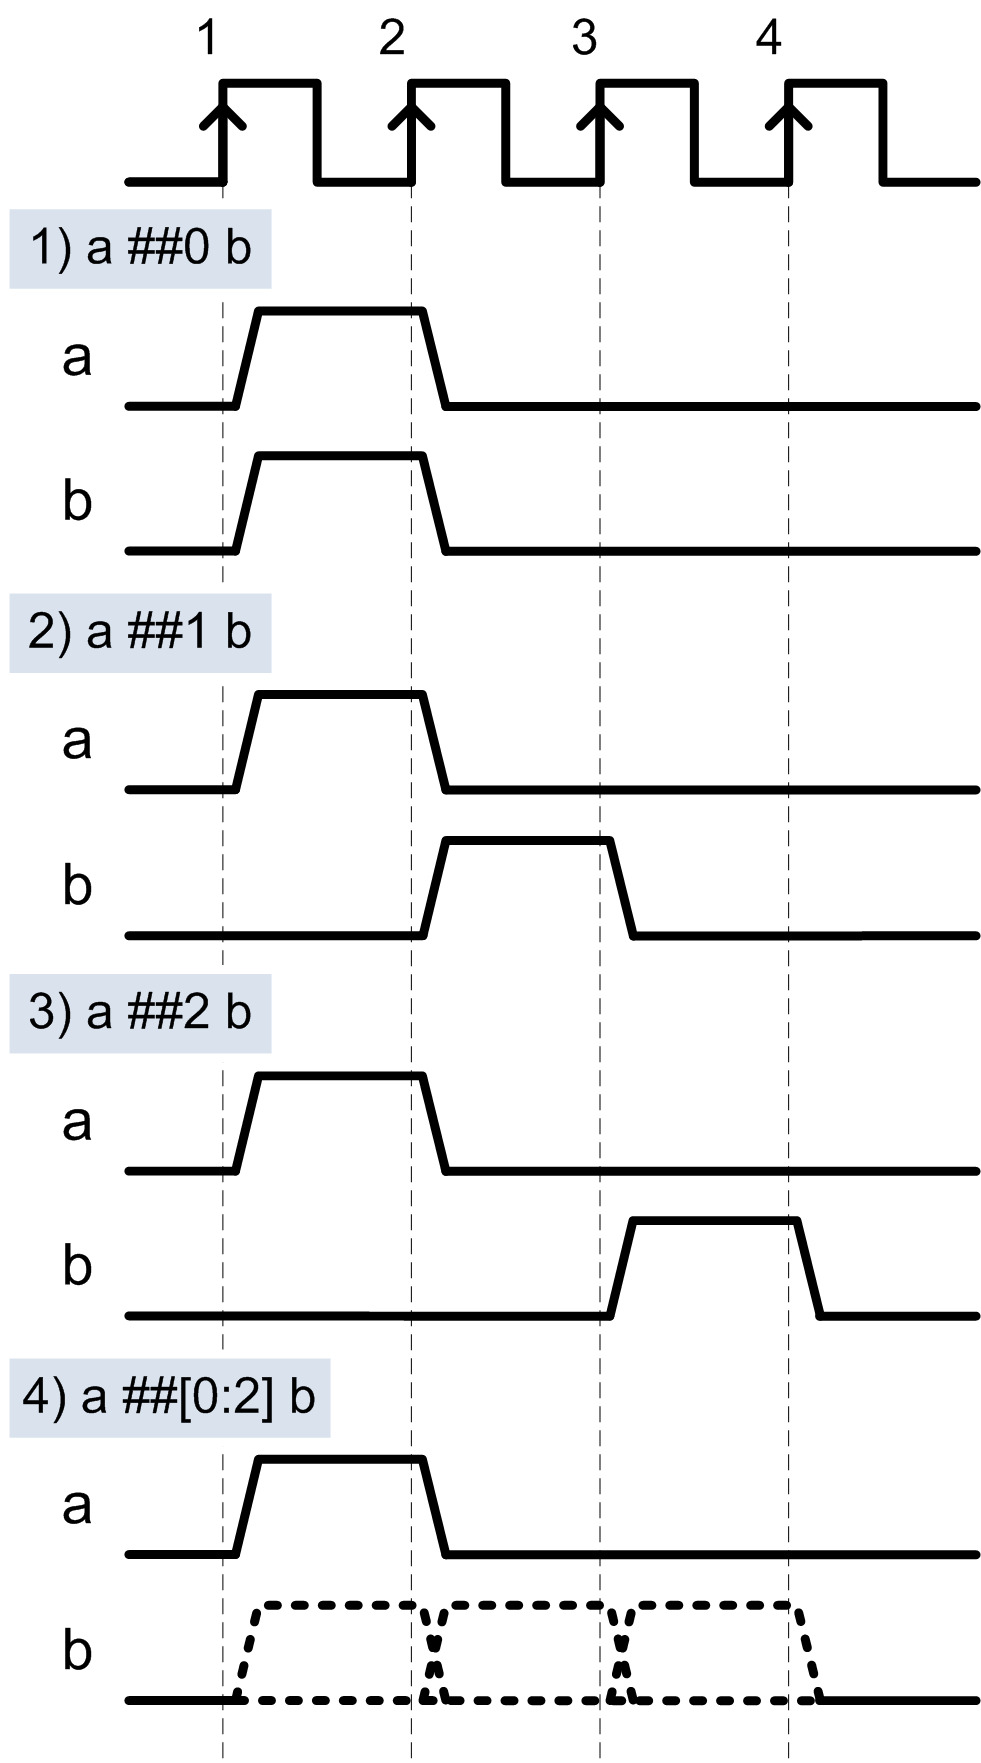 Рис. 5. 1) Сигнал «b» установится в ‘1’ в том же такте, что и сигнал «a». 2) Сигнал «b» 
	установится в ‘1’ на следующем	такте после «a». 3) Сигнал «b» установится в ‘1’ через 2 такта после «a». 
	4)	Сигнал «b» установится в ‘1’ в промежутке 0-2 тактов после «a» (данной последовательности удовлетворяет 
	любая из последовательностей 1)-3))